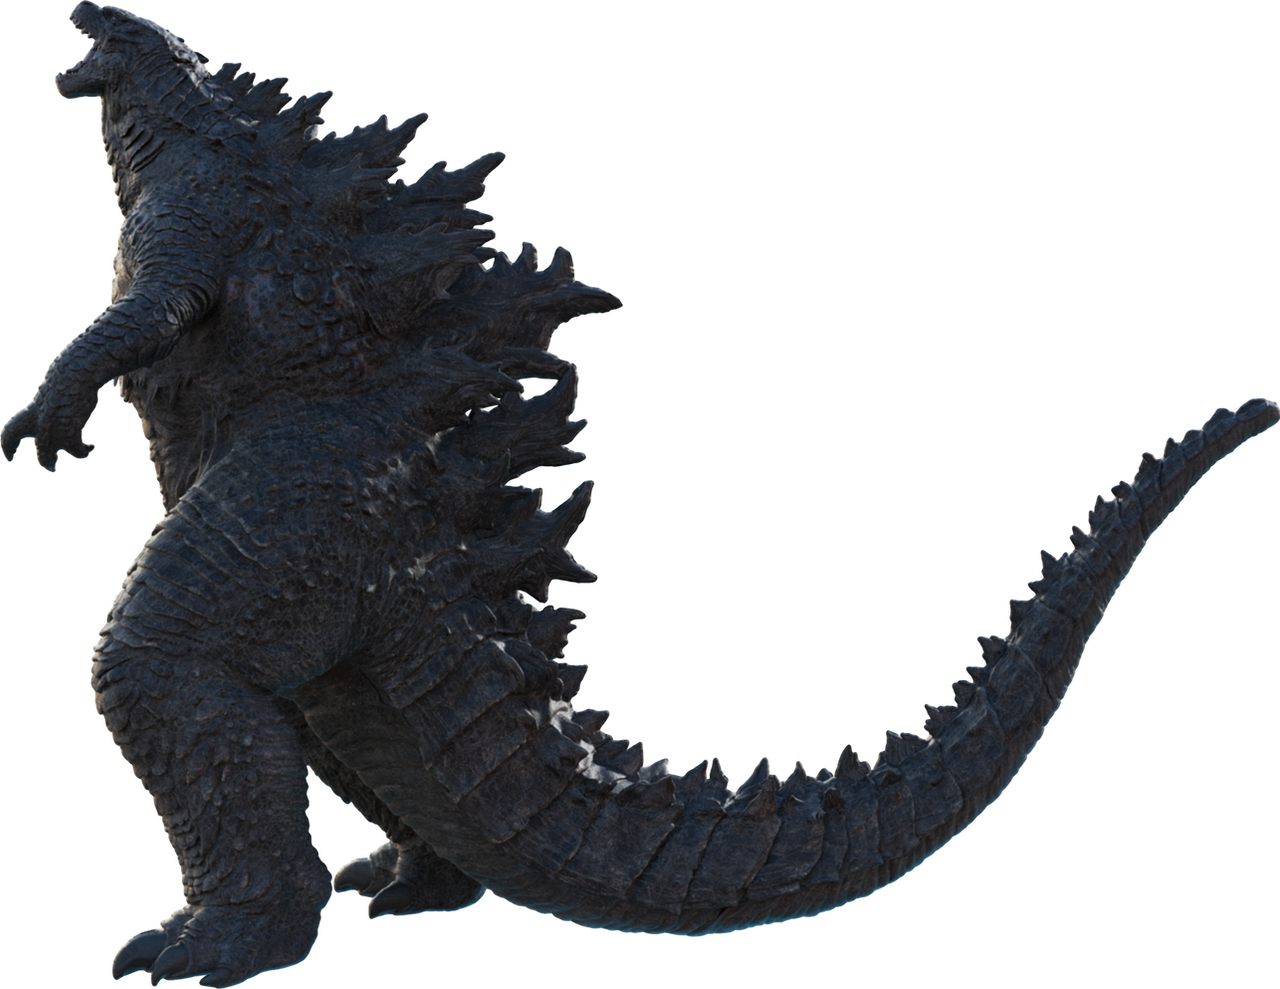 35+ Latest Burning Godzilla Full Body Godzilla 2019 Drawing